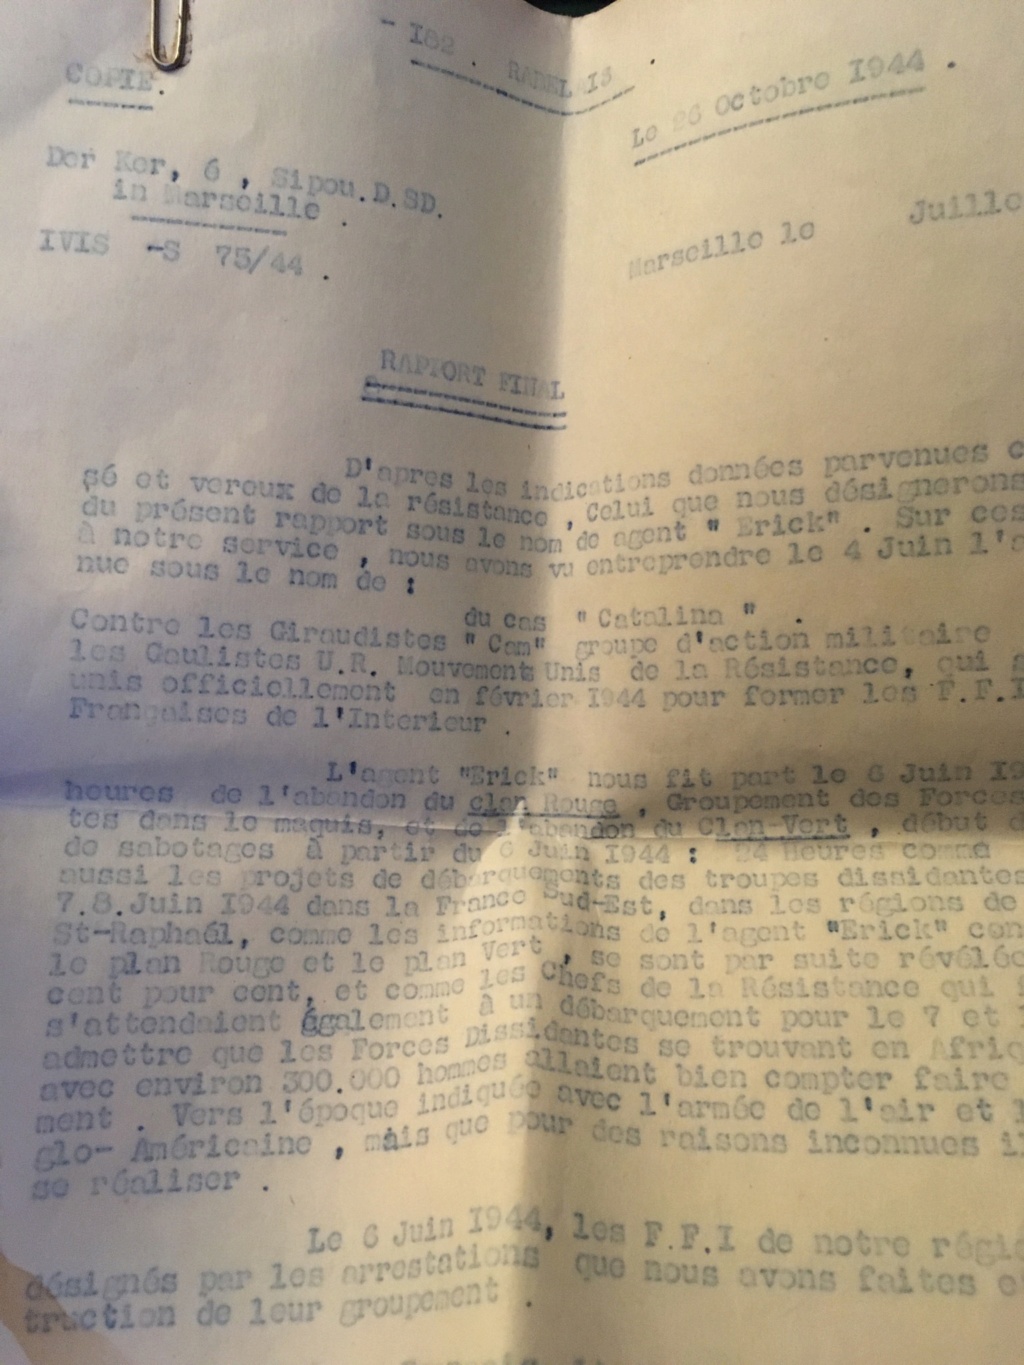 Demande estimation - resistant - chef armée secrète fusillé en 1944 4baf8810